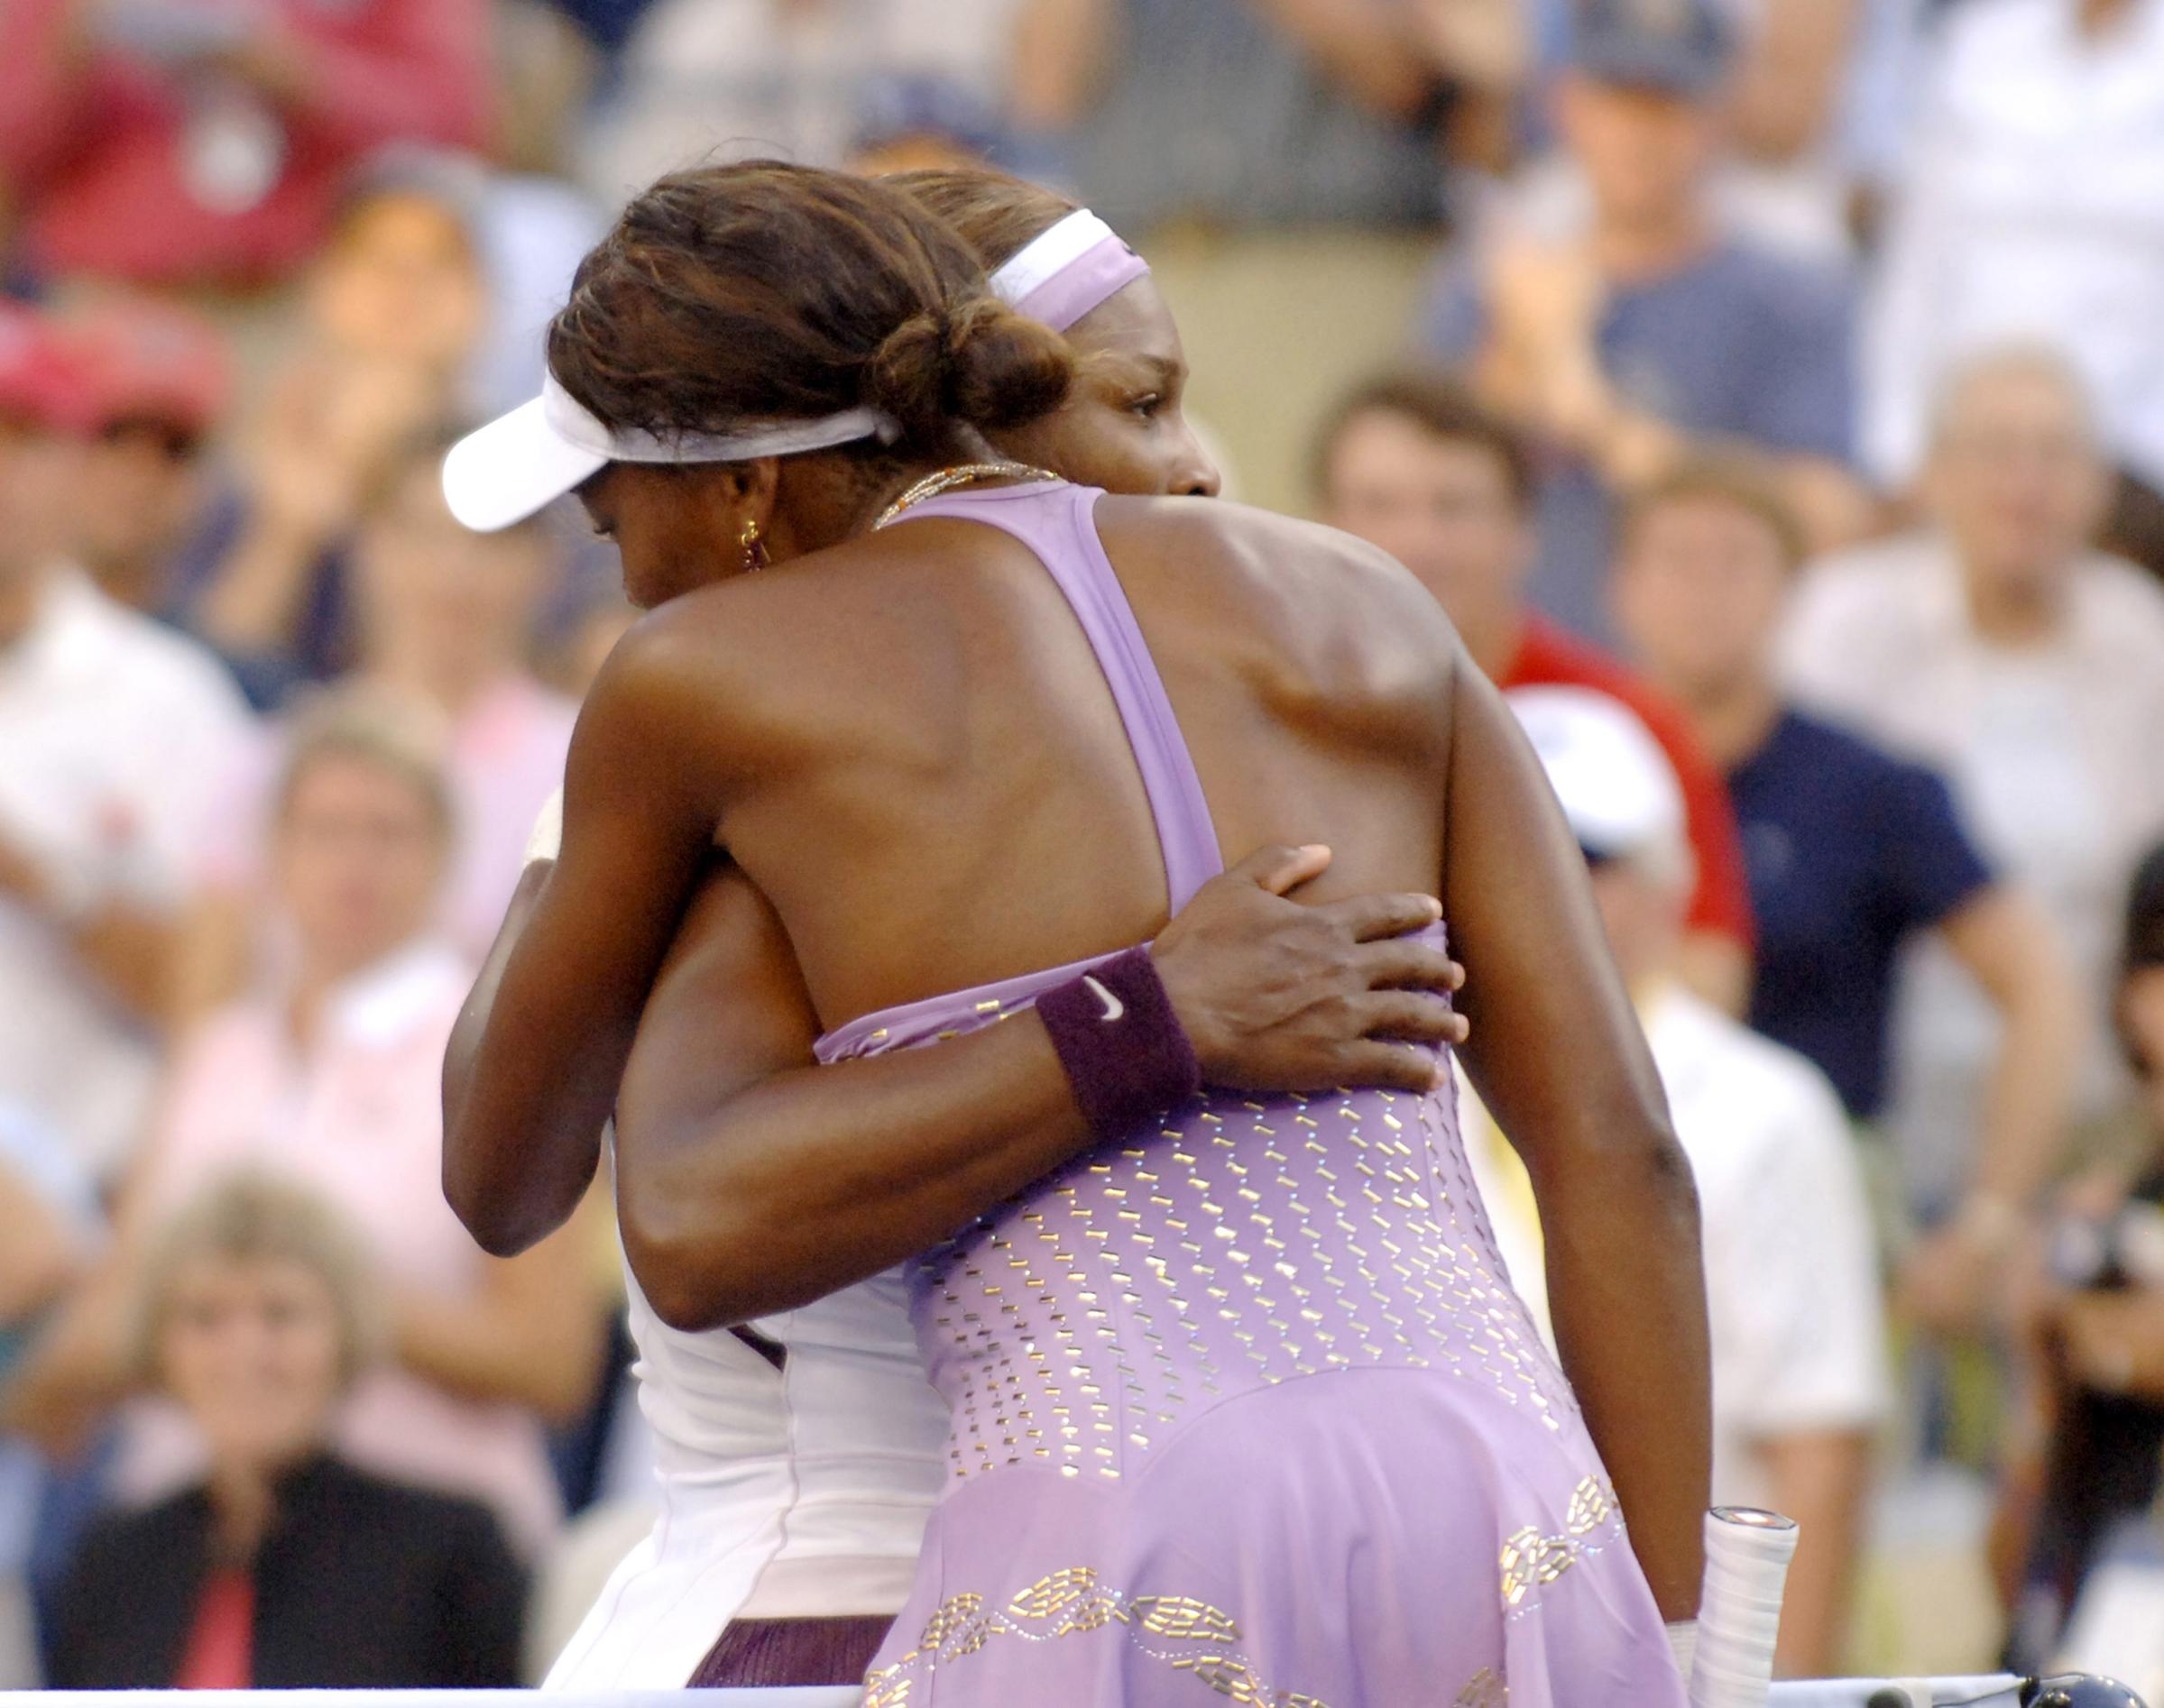 2005 U.S. Open - Women's Singles - Fourth Round - Serena Williams vs Venus Williams